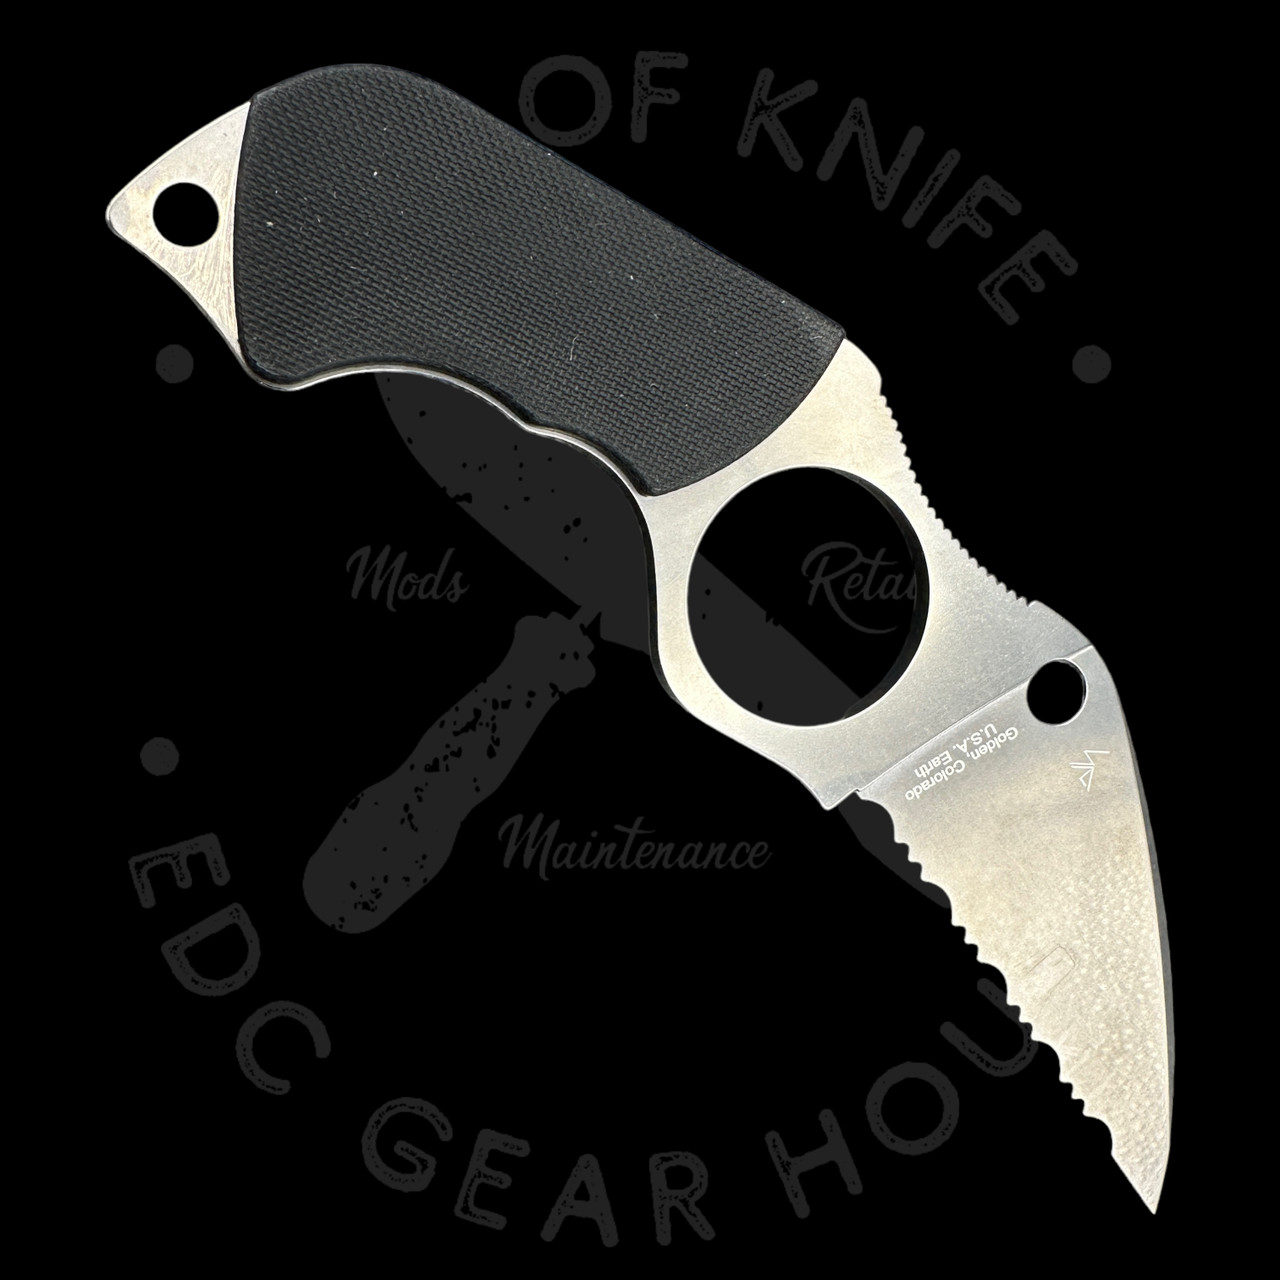 Spyderco Enuff 2 Fixed Blade Knife 3.93 VG10 Leaf Shaped Serrated Blade,  Black FRN Handles, Polymer Sheath - FB31SBK2 - Way Of Knife & EDC Gear House